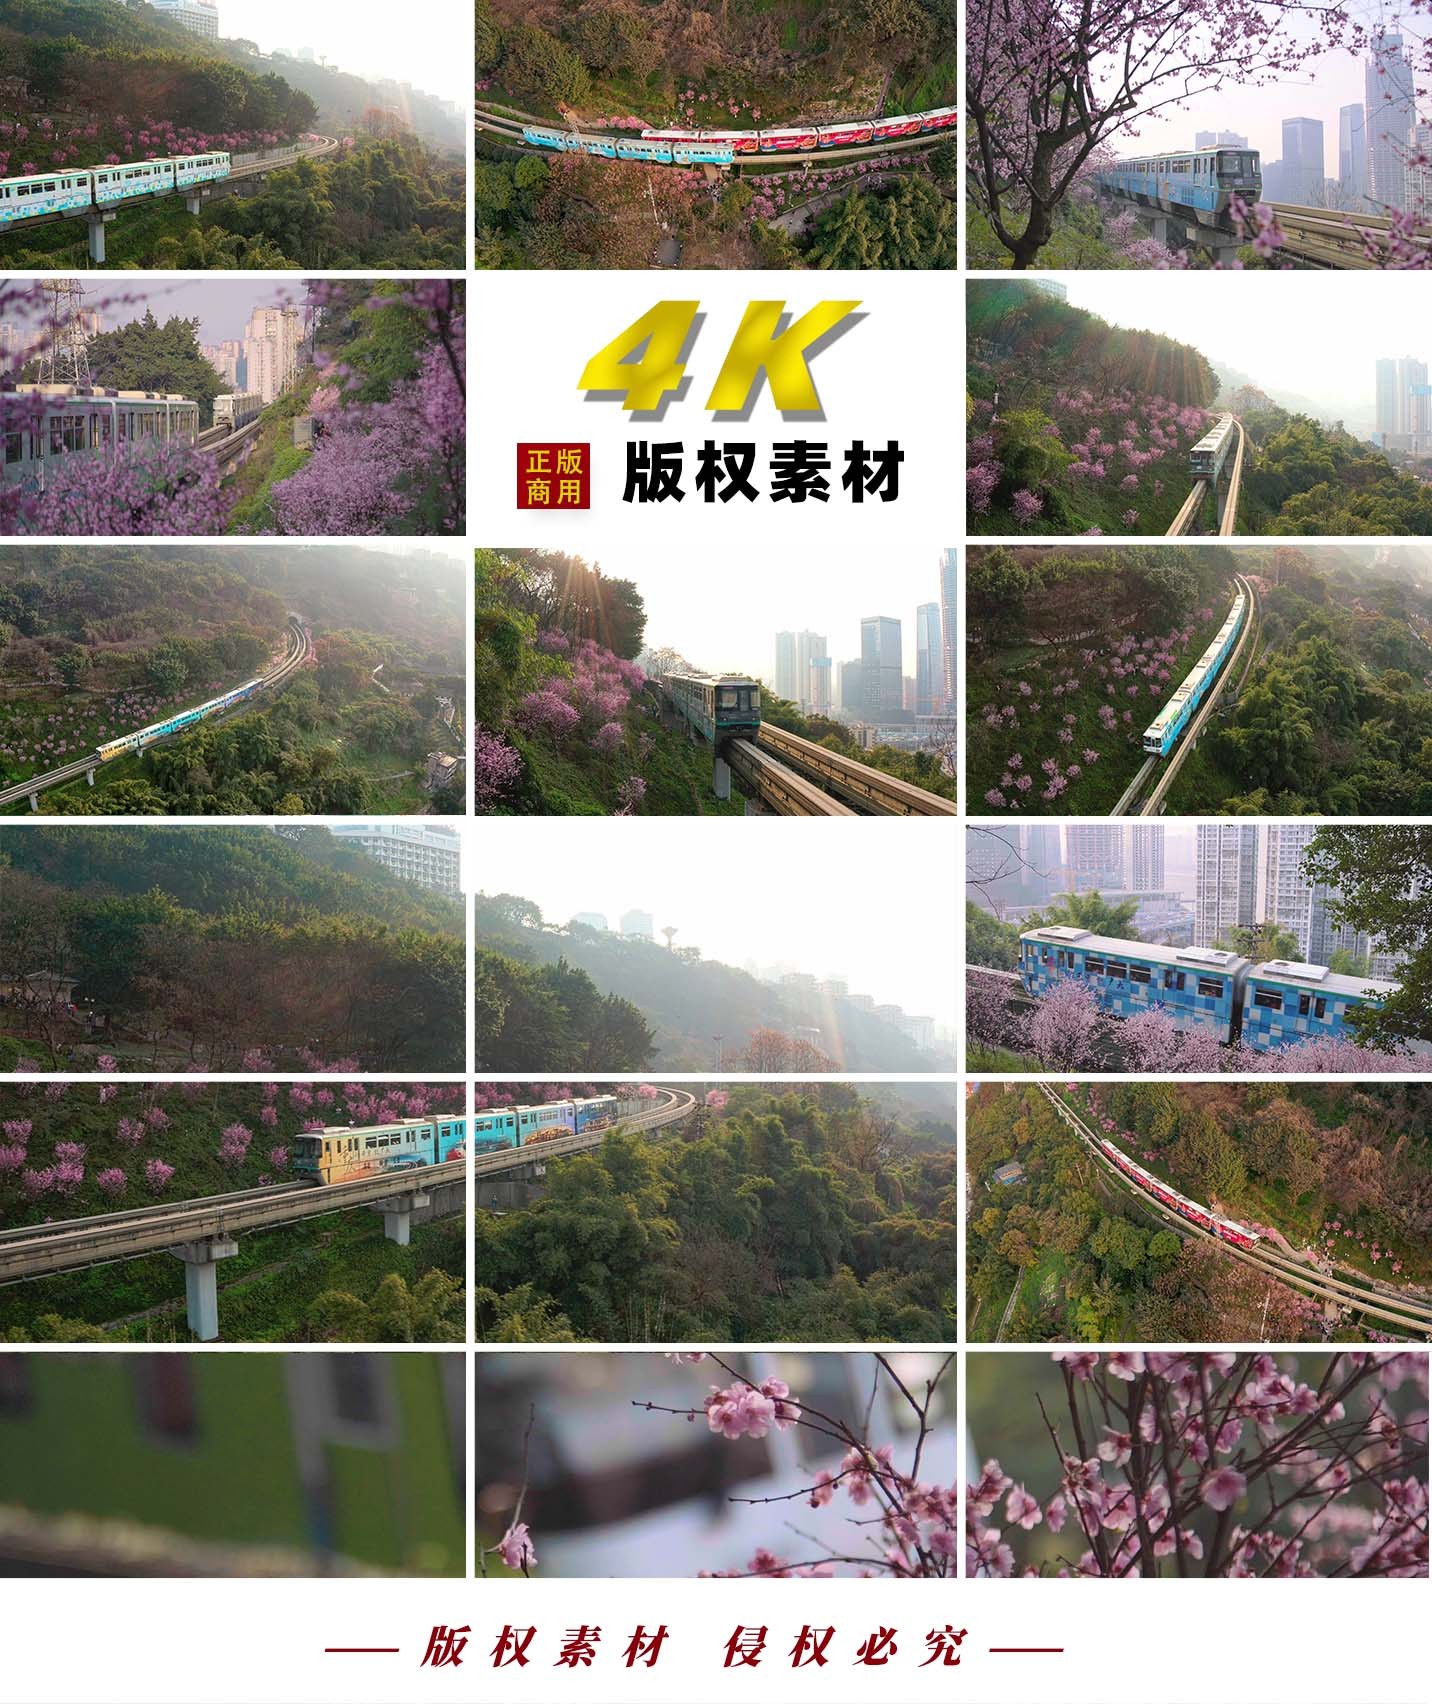 【4K】重庆开往春天的列车